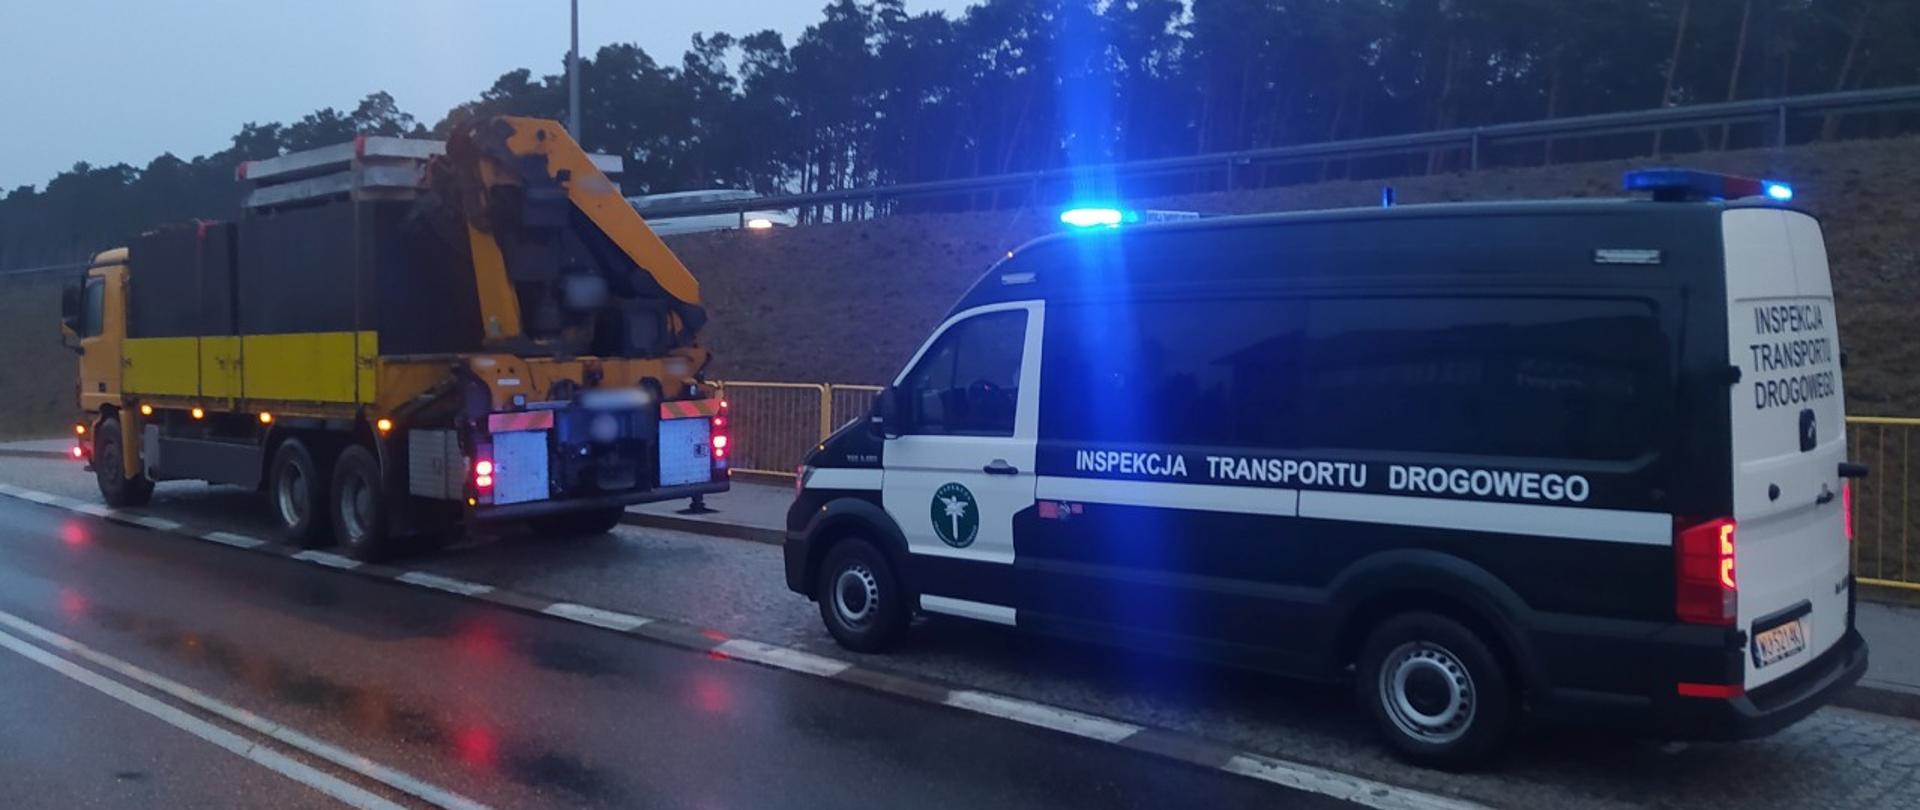 Ciężarówka z szambami betonowymi zatrzymana do kontroli drogowej i stojący za nią radiowóz ITD z włączoną sygnalizacją świetlną uprzywilejowania.